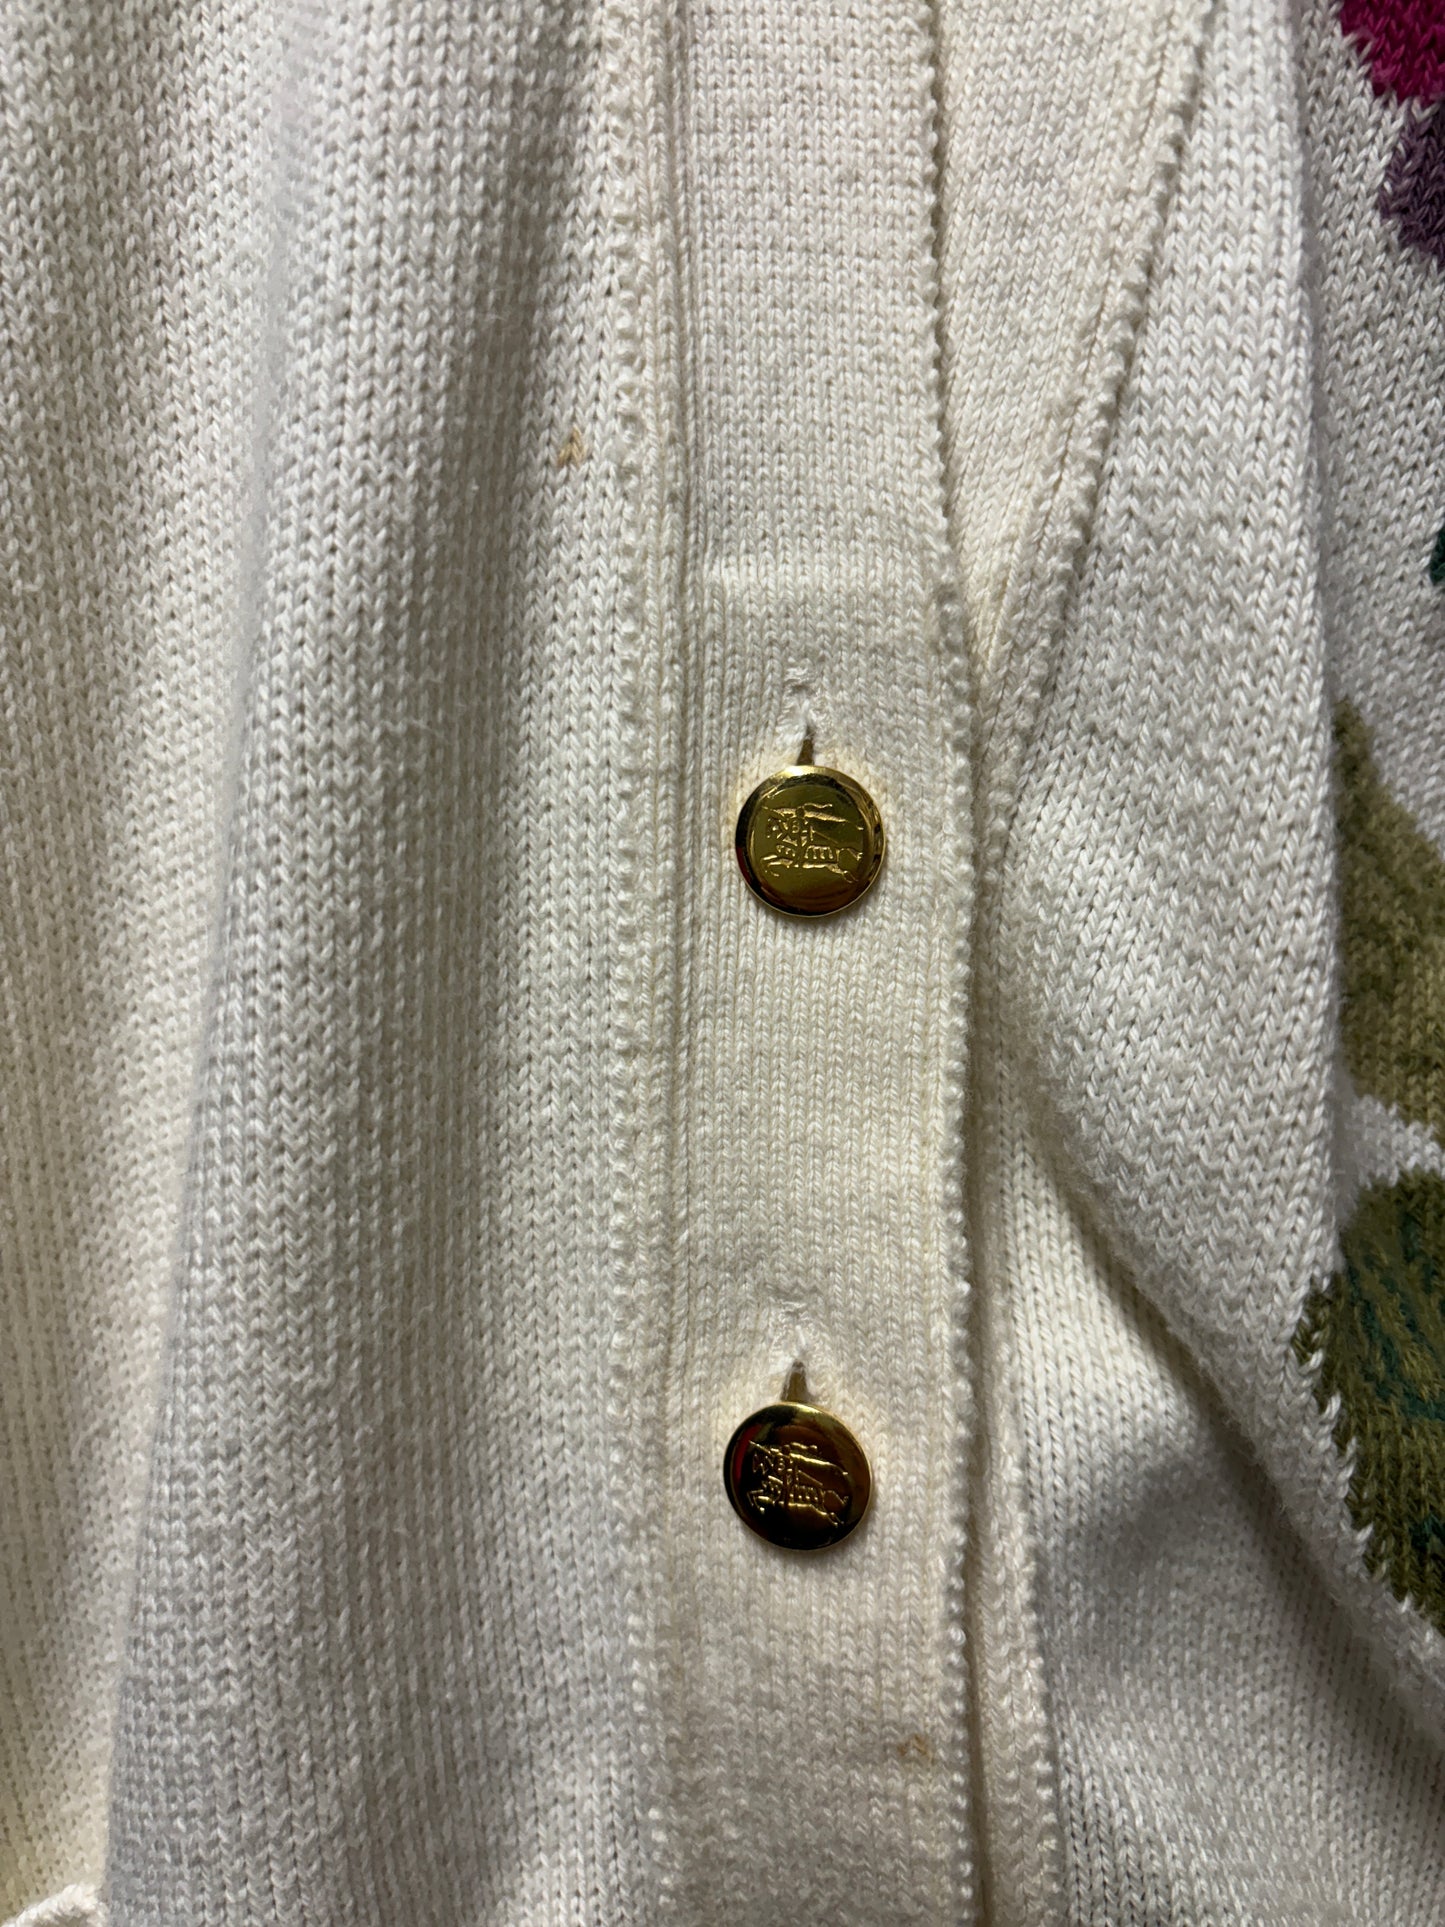 Burberry's Vintage Floral Button Up Cotton Cardigan 42"